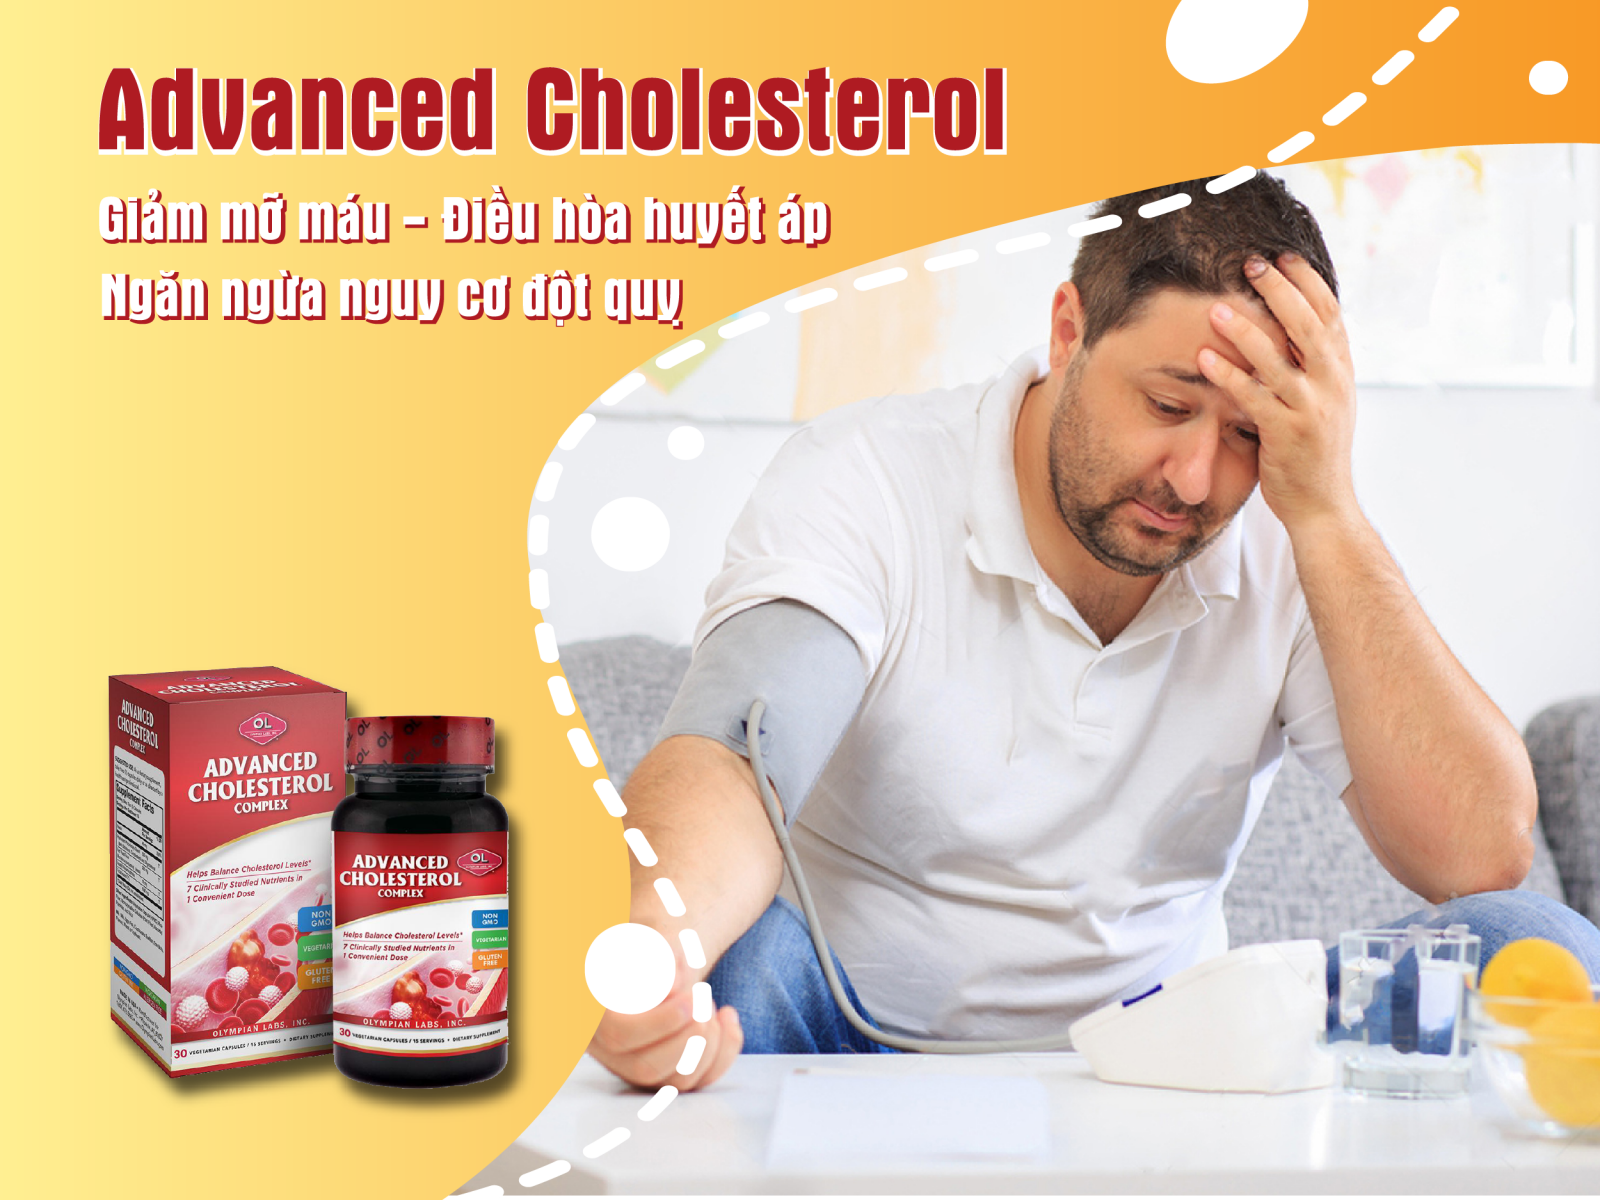 Cơ chế tác dộng của Advanced Cholesterol